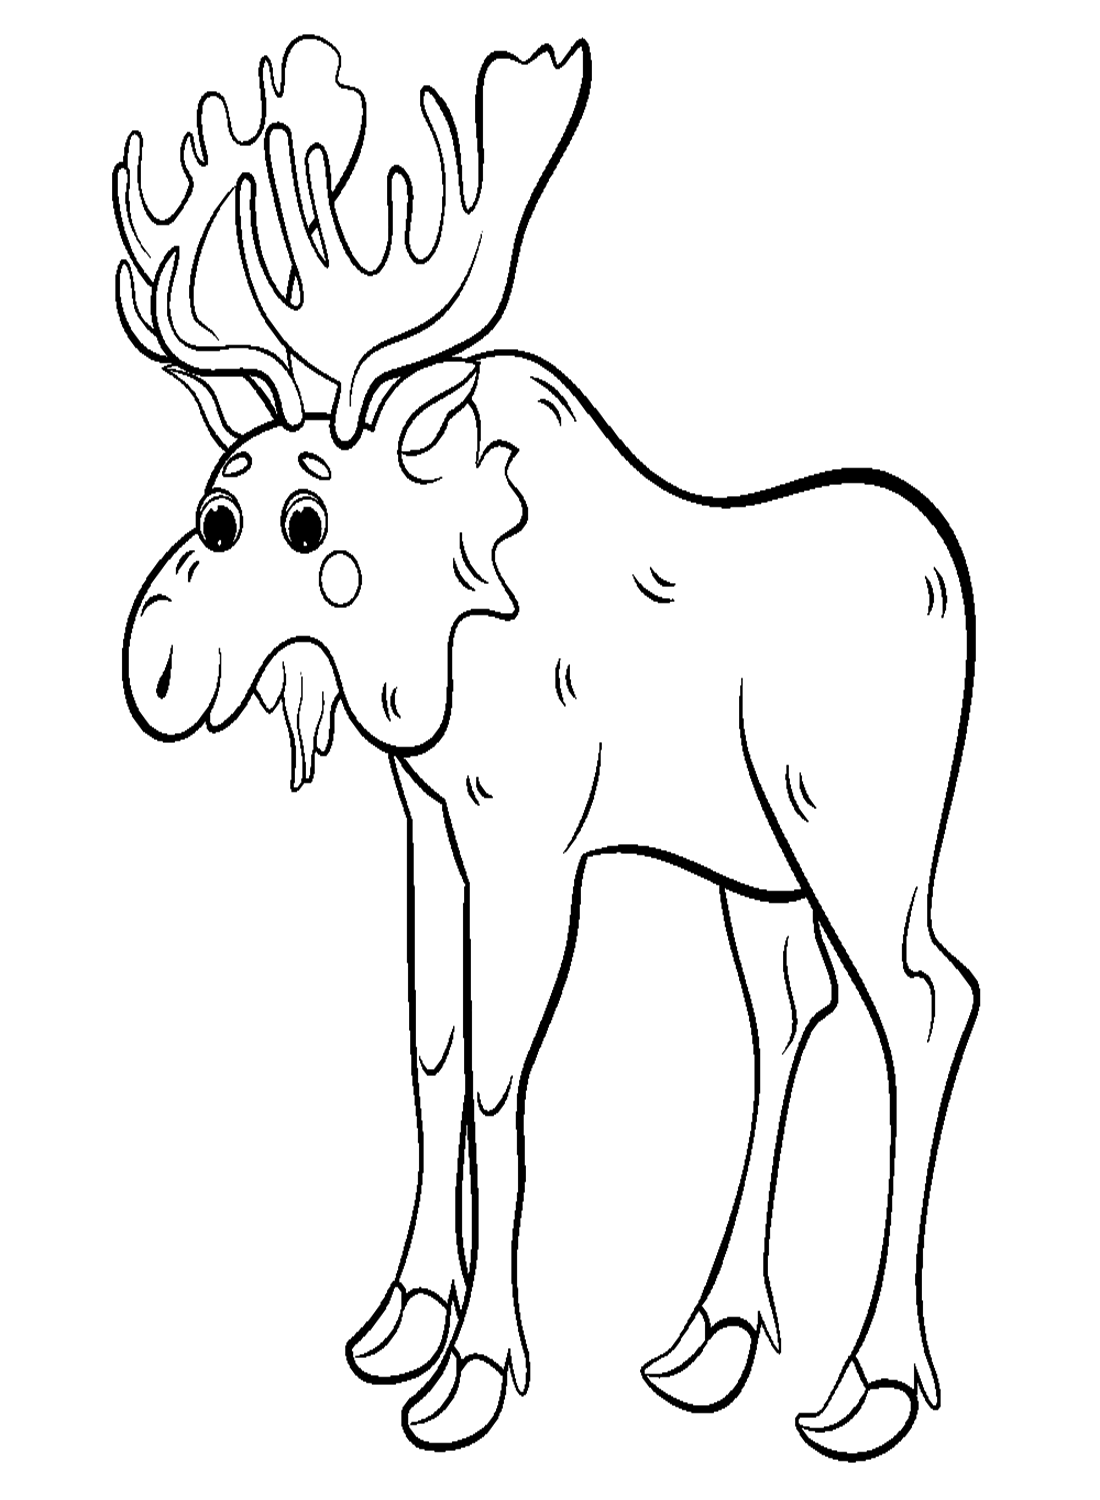 Alce realista from Elk